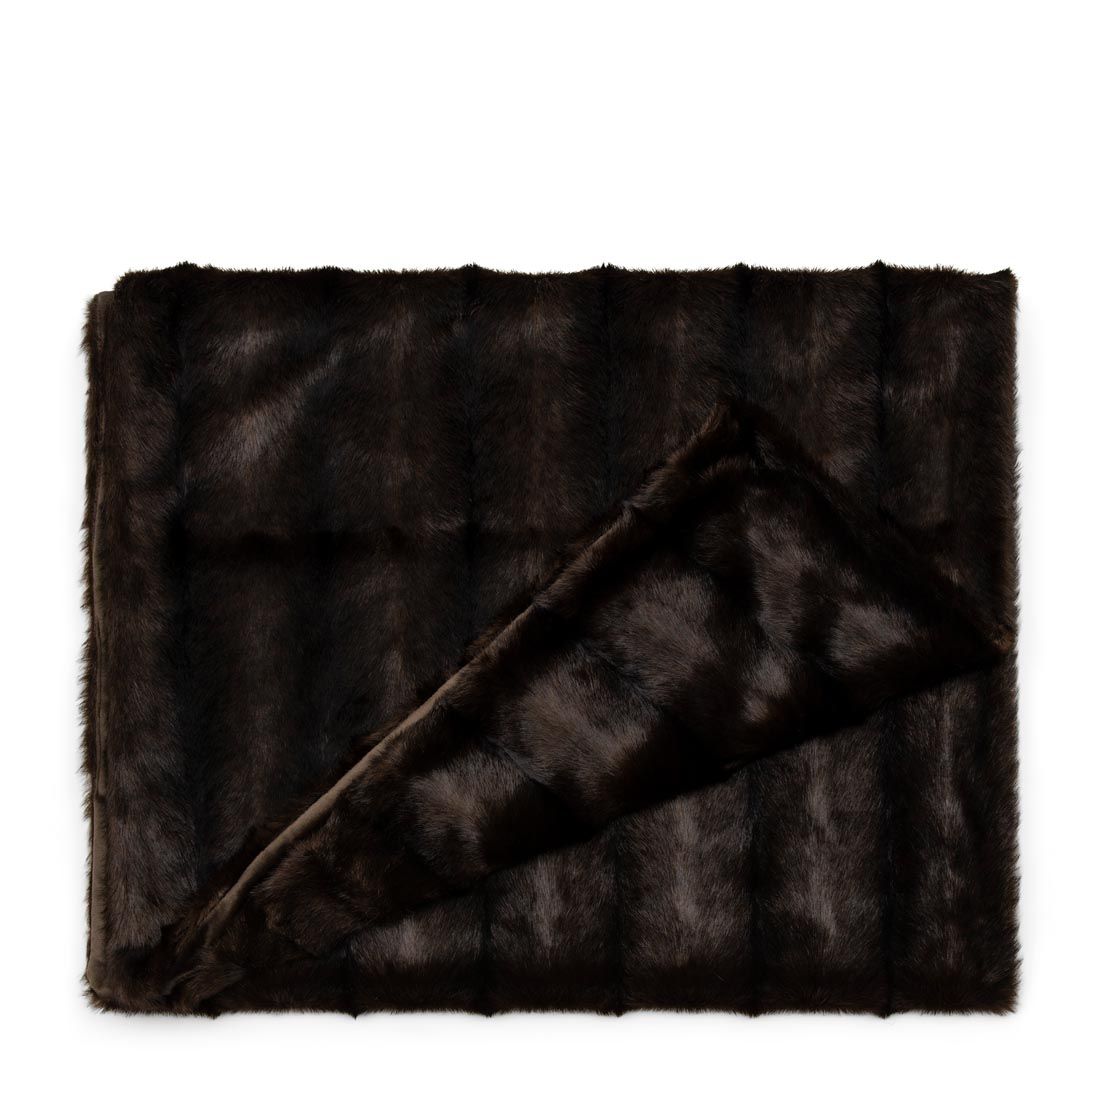 RM Vintage Faux Fur Throw Chăn lông sopha cao cấp màu nâu 170x130 490060